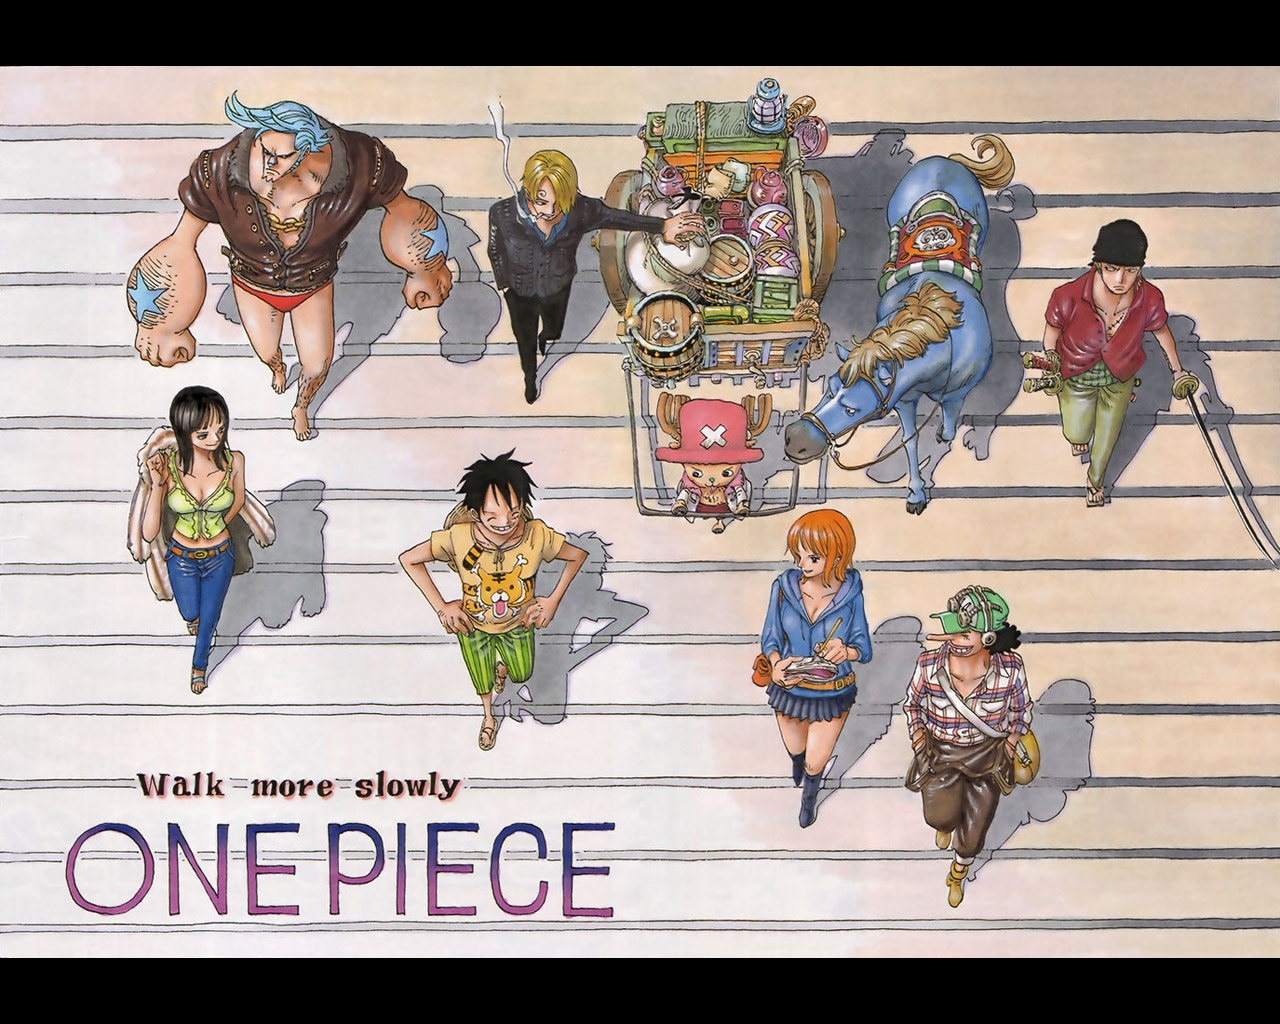 Descarga gratuita de fondo de pantalla para móvil de Animado, One Piece, Tony Tony Chopper, Usopp (Una Pieza), Roronoa Zoro, Monkey D Luffy, Nami (Una Pieza), Sanji (Una Pieza), Nico Robin, Franky (Una Pieza).